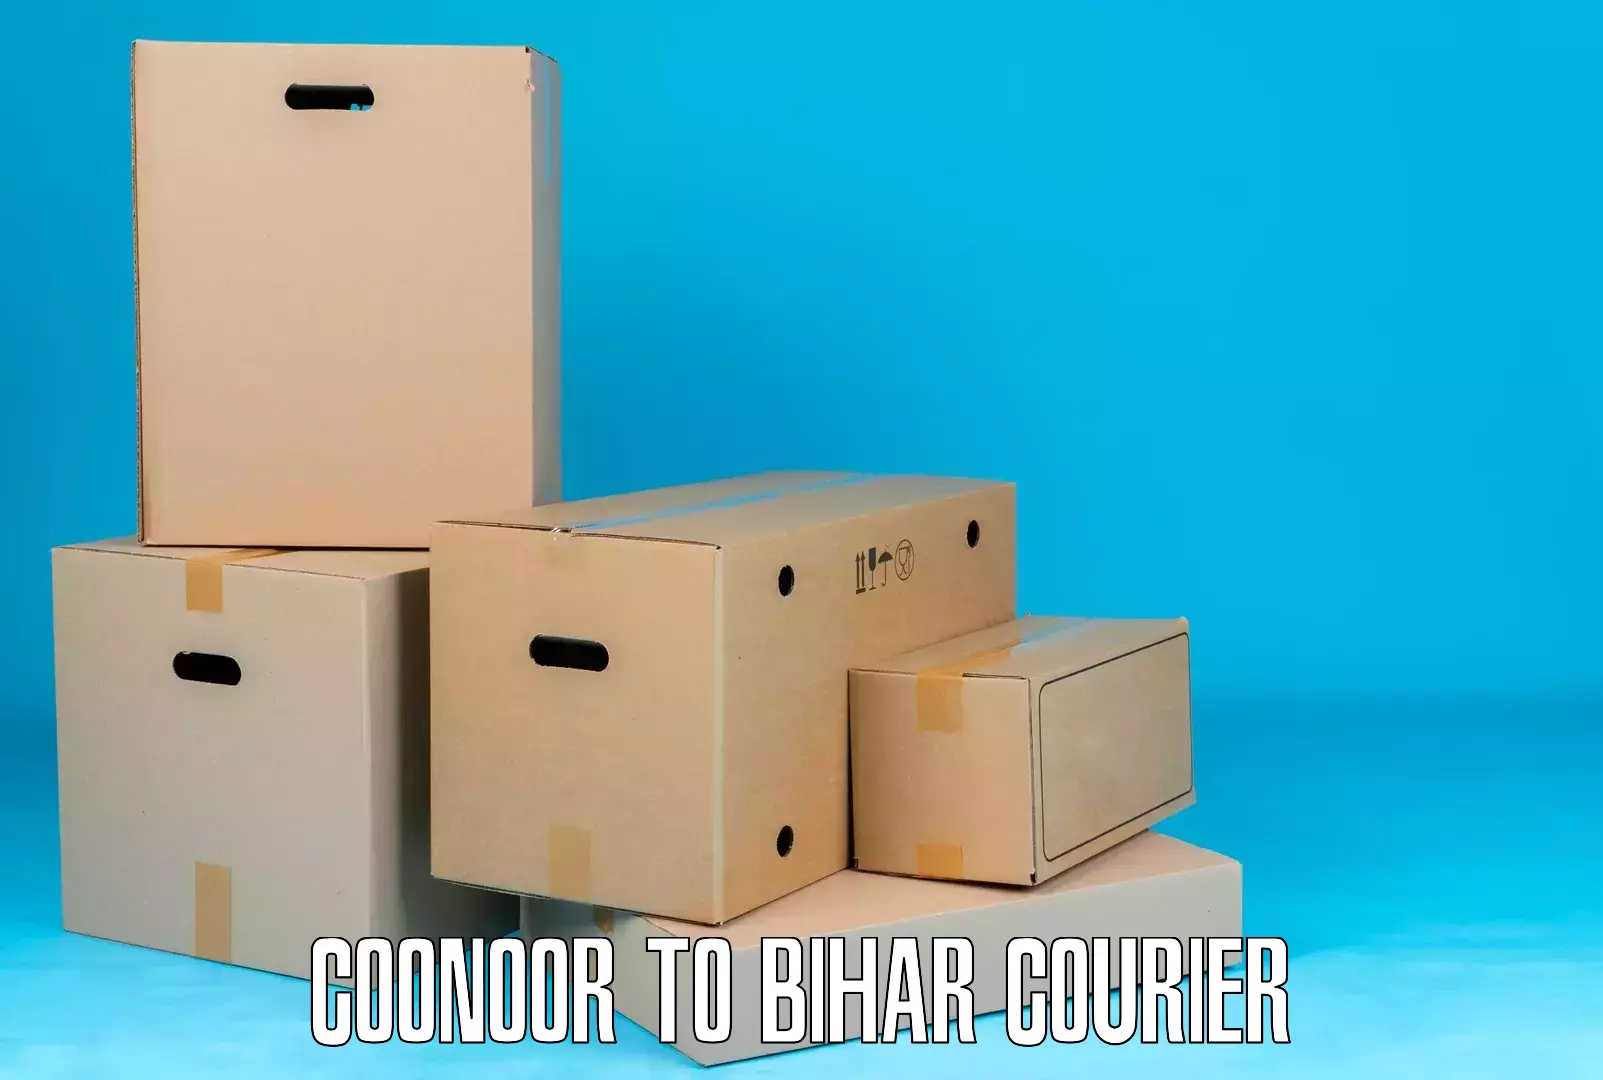 International parcel service in Coonoor to IIIT Bhagalpur